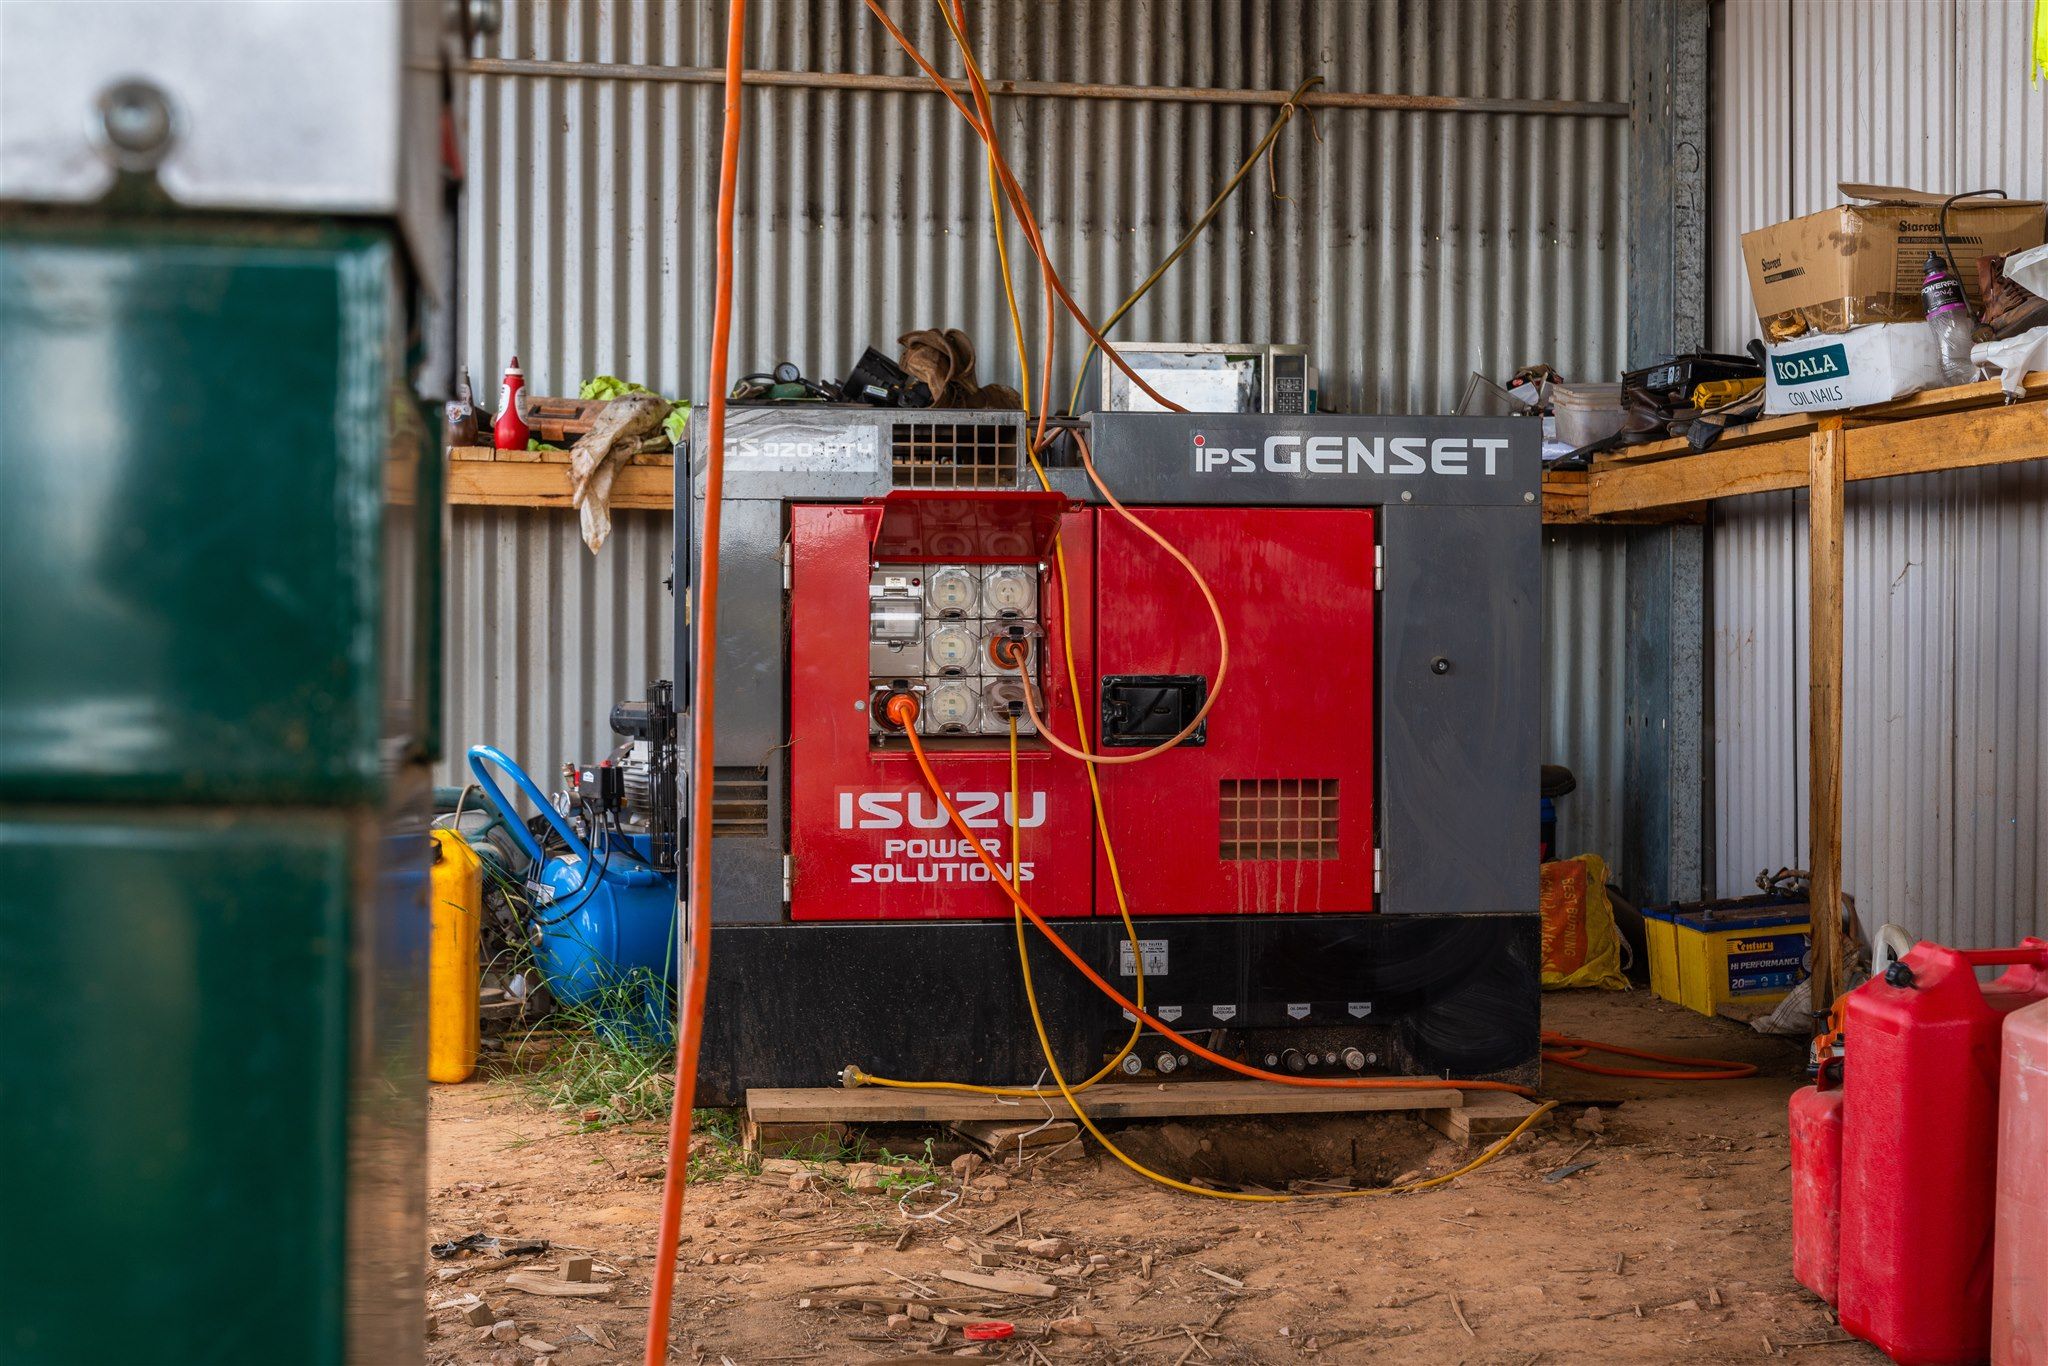 The First Class Firewood Isuzu Power Solutions GS020PTY generator set